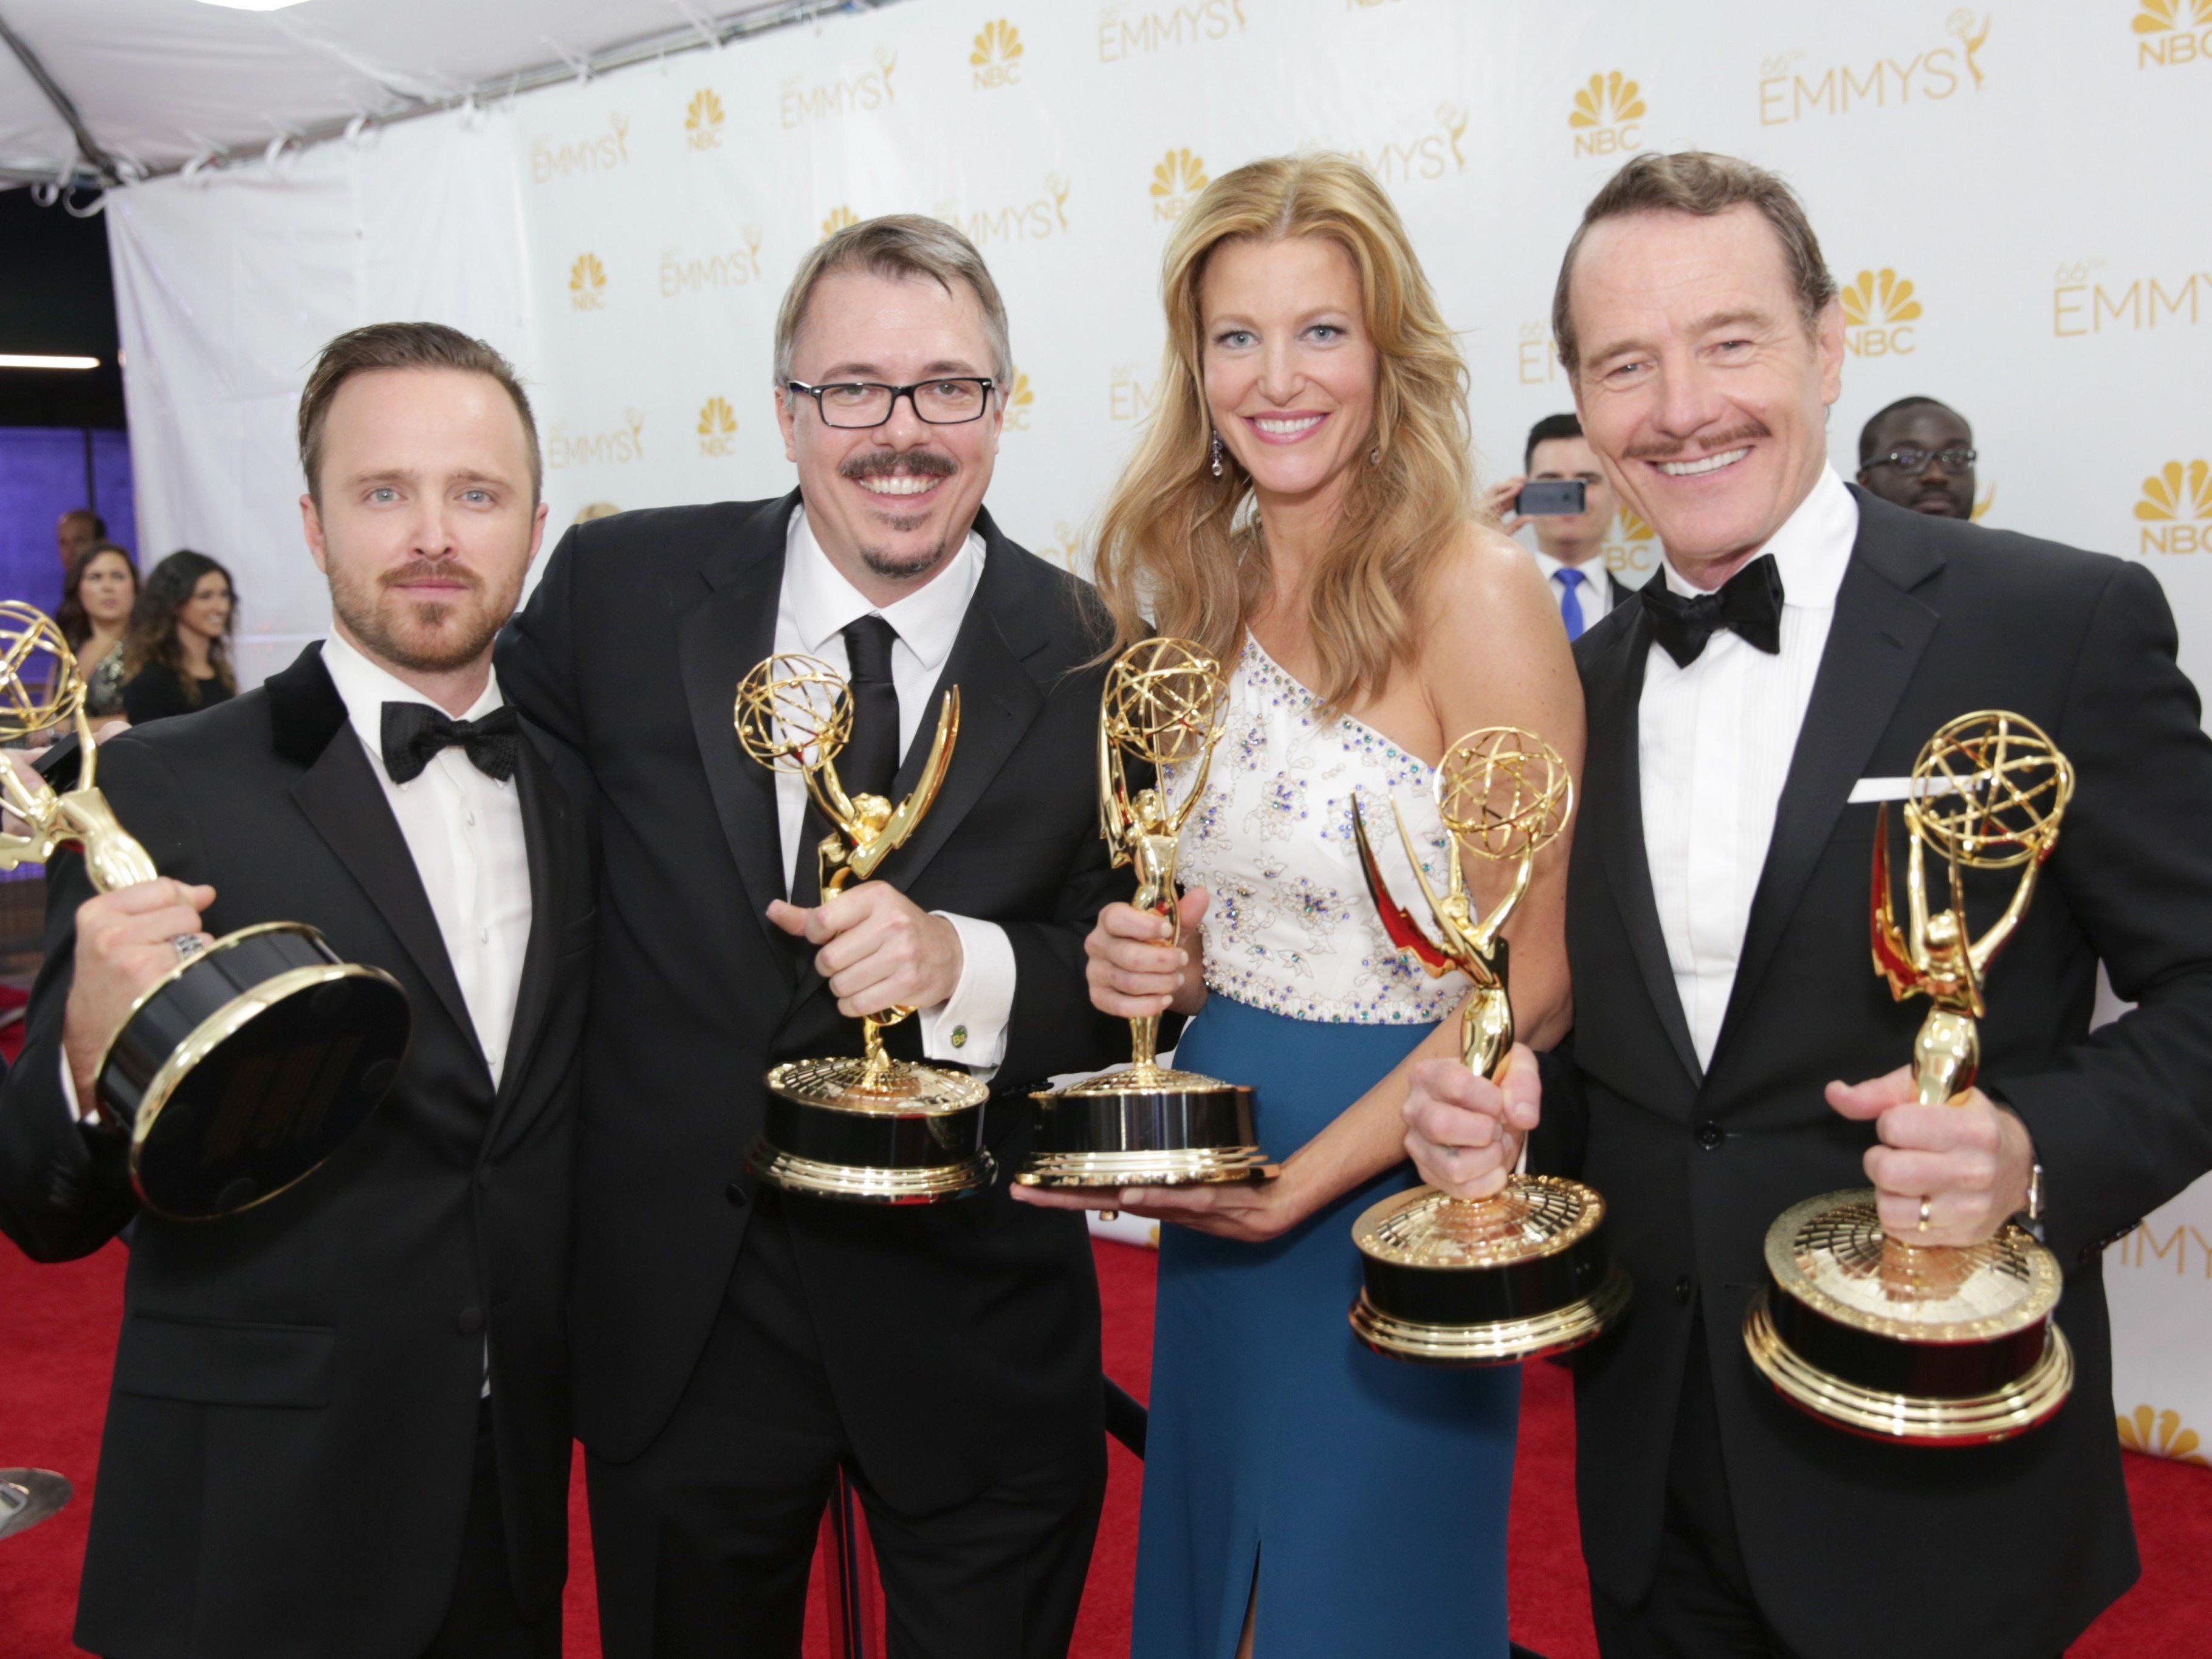 Breaking Bad räumte bei den Emmy-Awards 2014 alle wichtigen Preise ab.